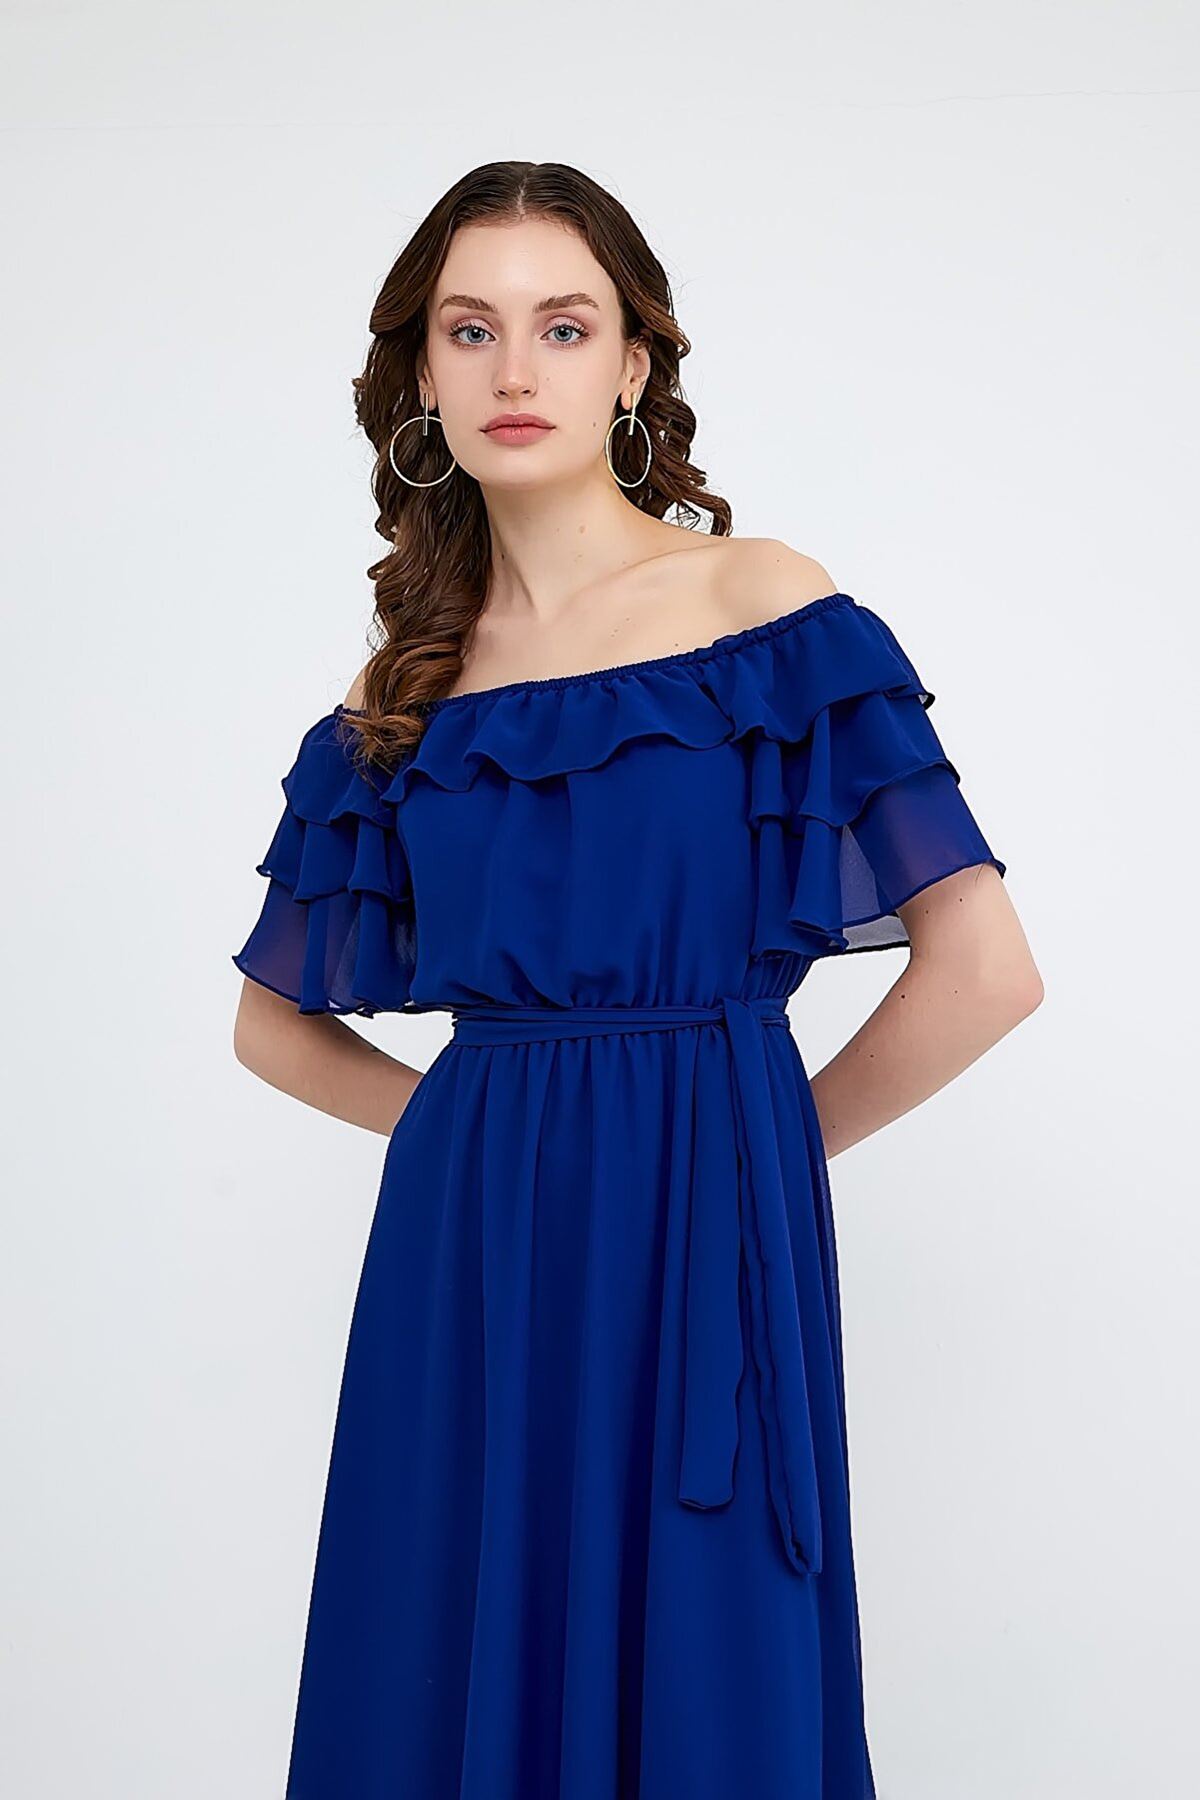  Kadın Carmen Yaka Şifon Saks Mavi Elbise 2E-5014